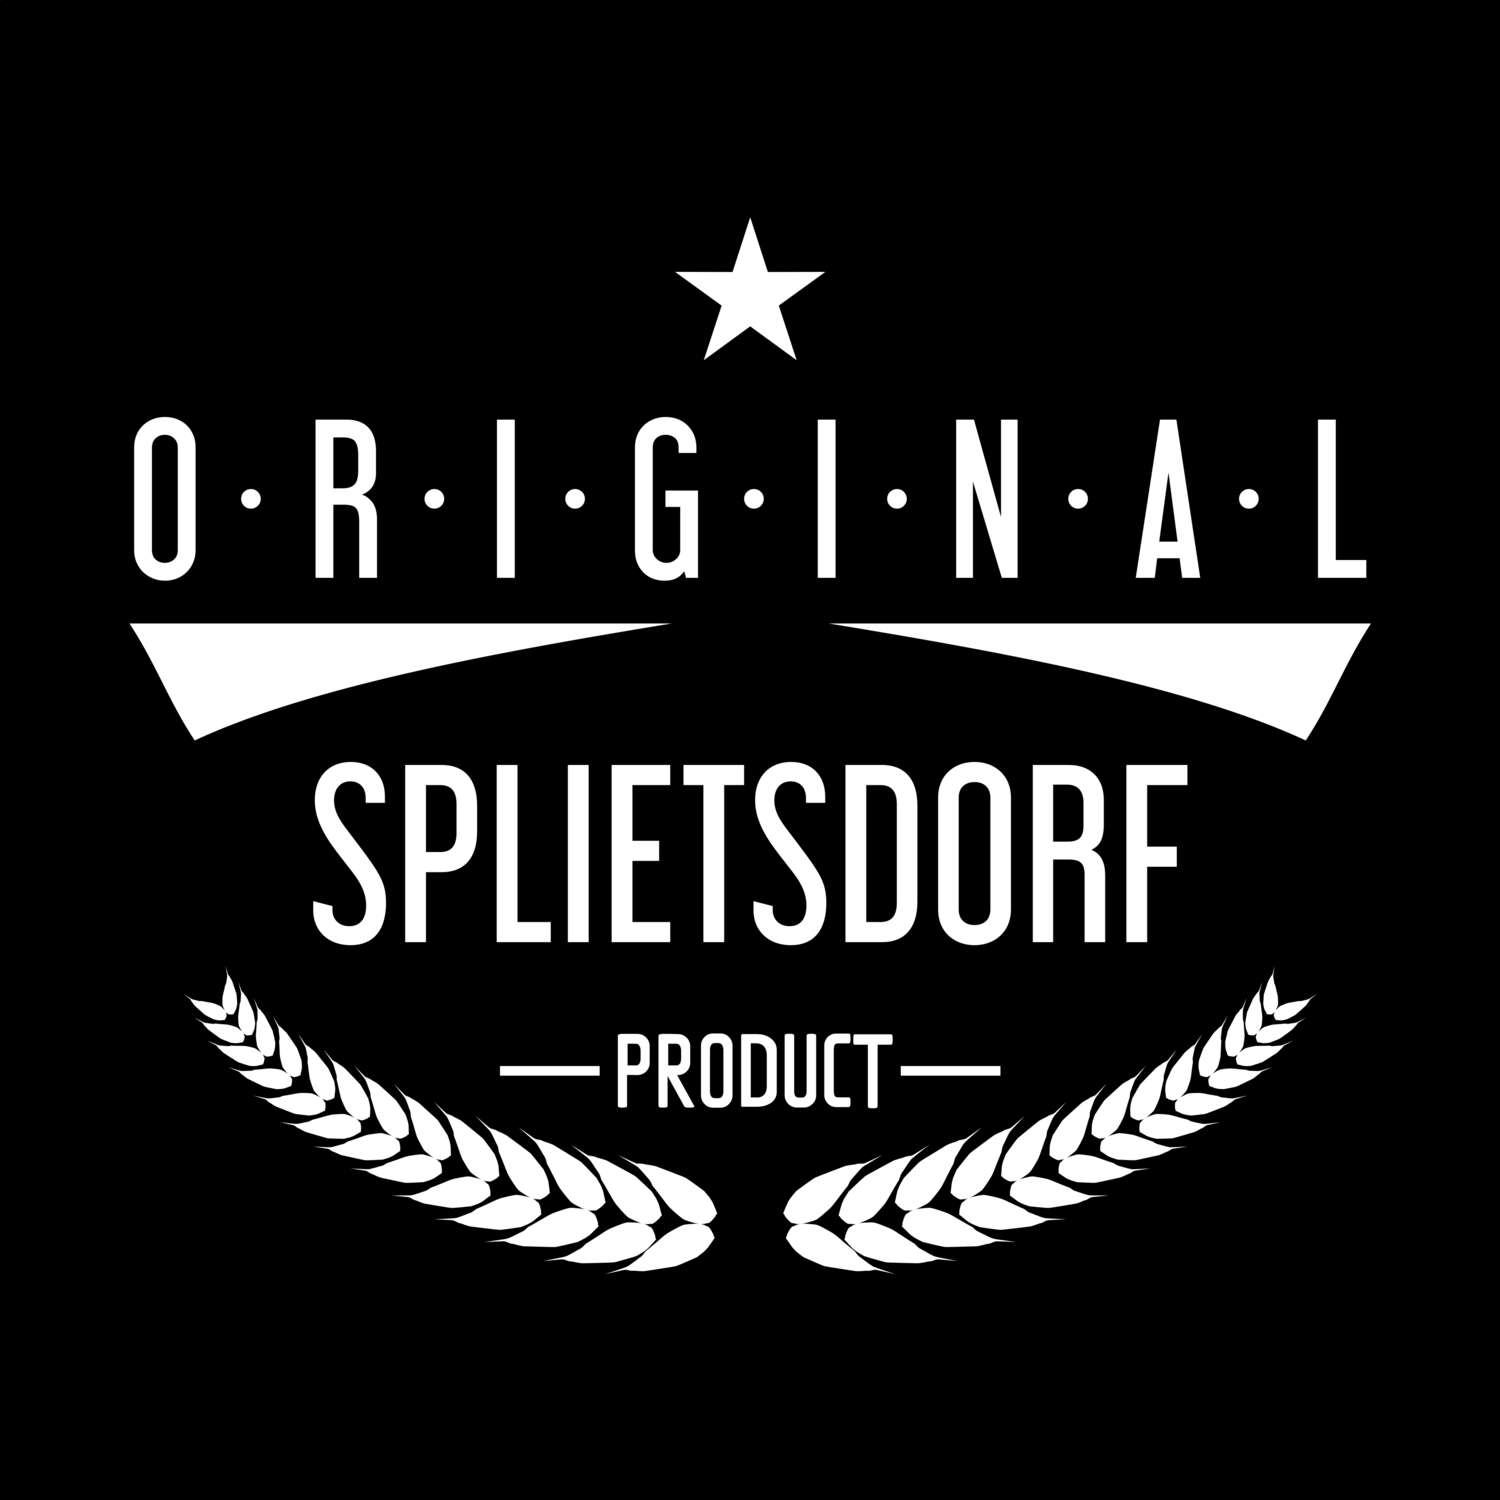 Splietsdorf T-Shirt »Original Product«